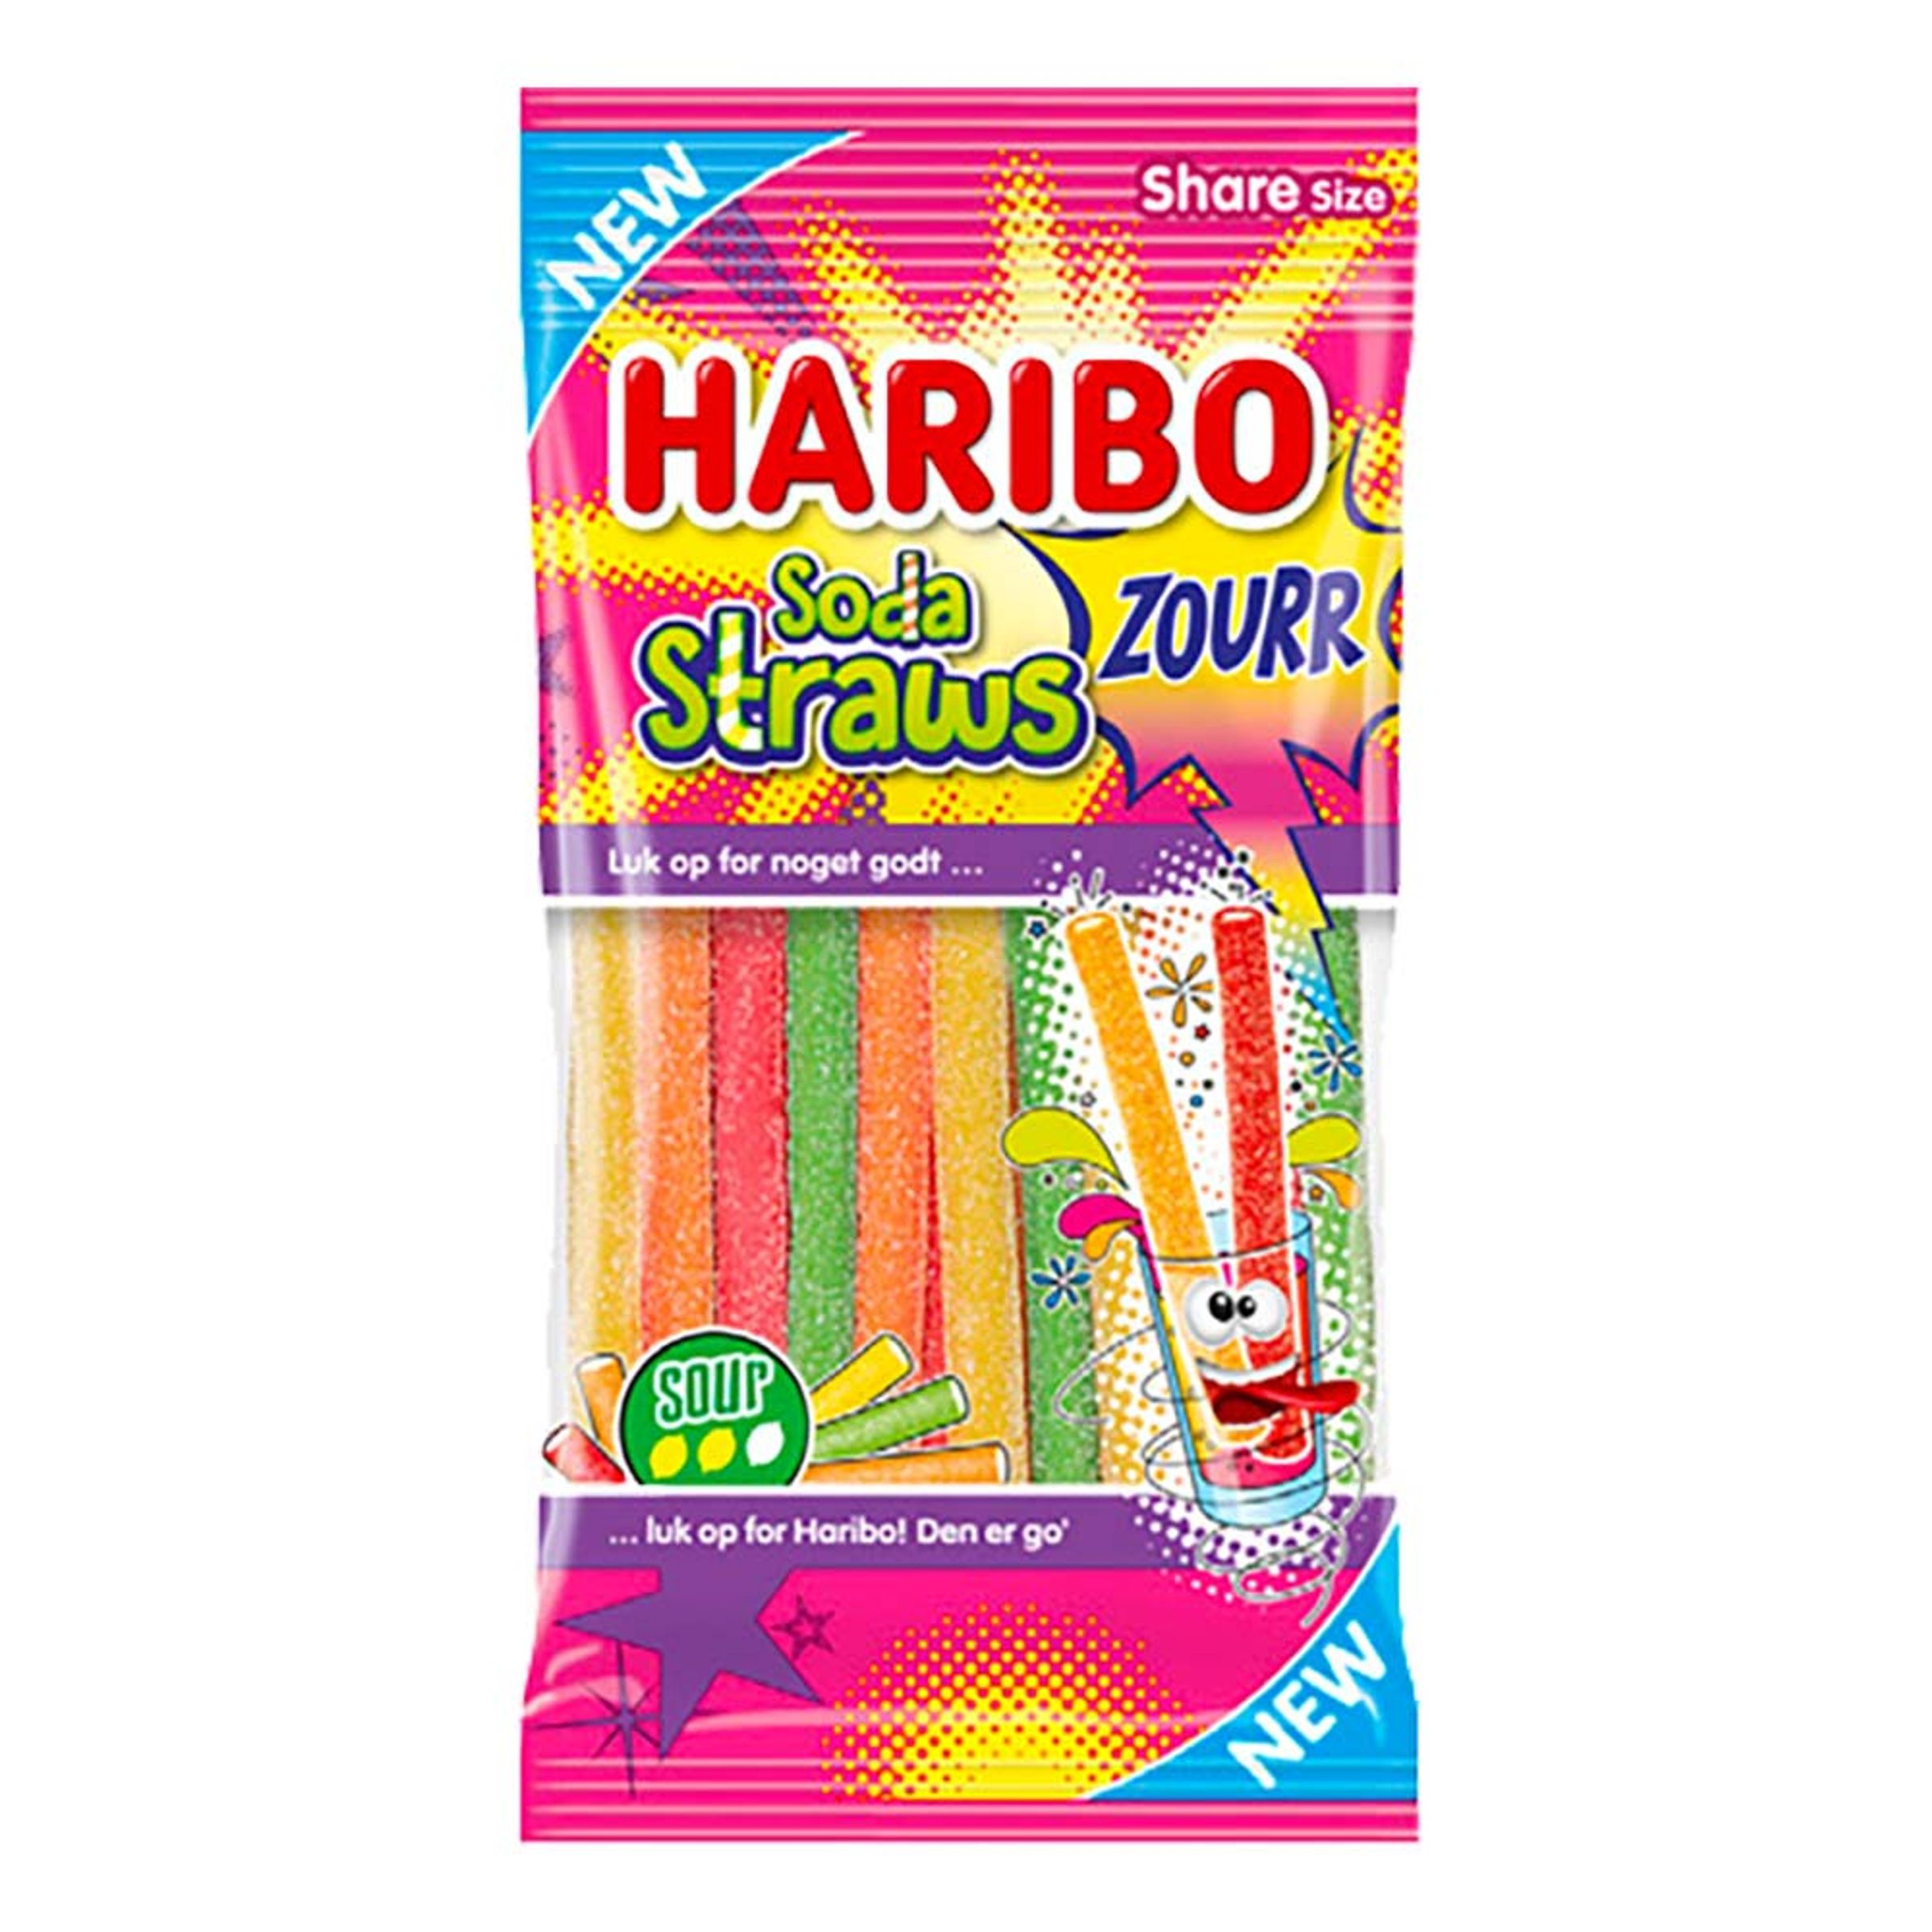 Haribo Soda Straws Zourr - 90 gram